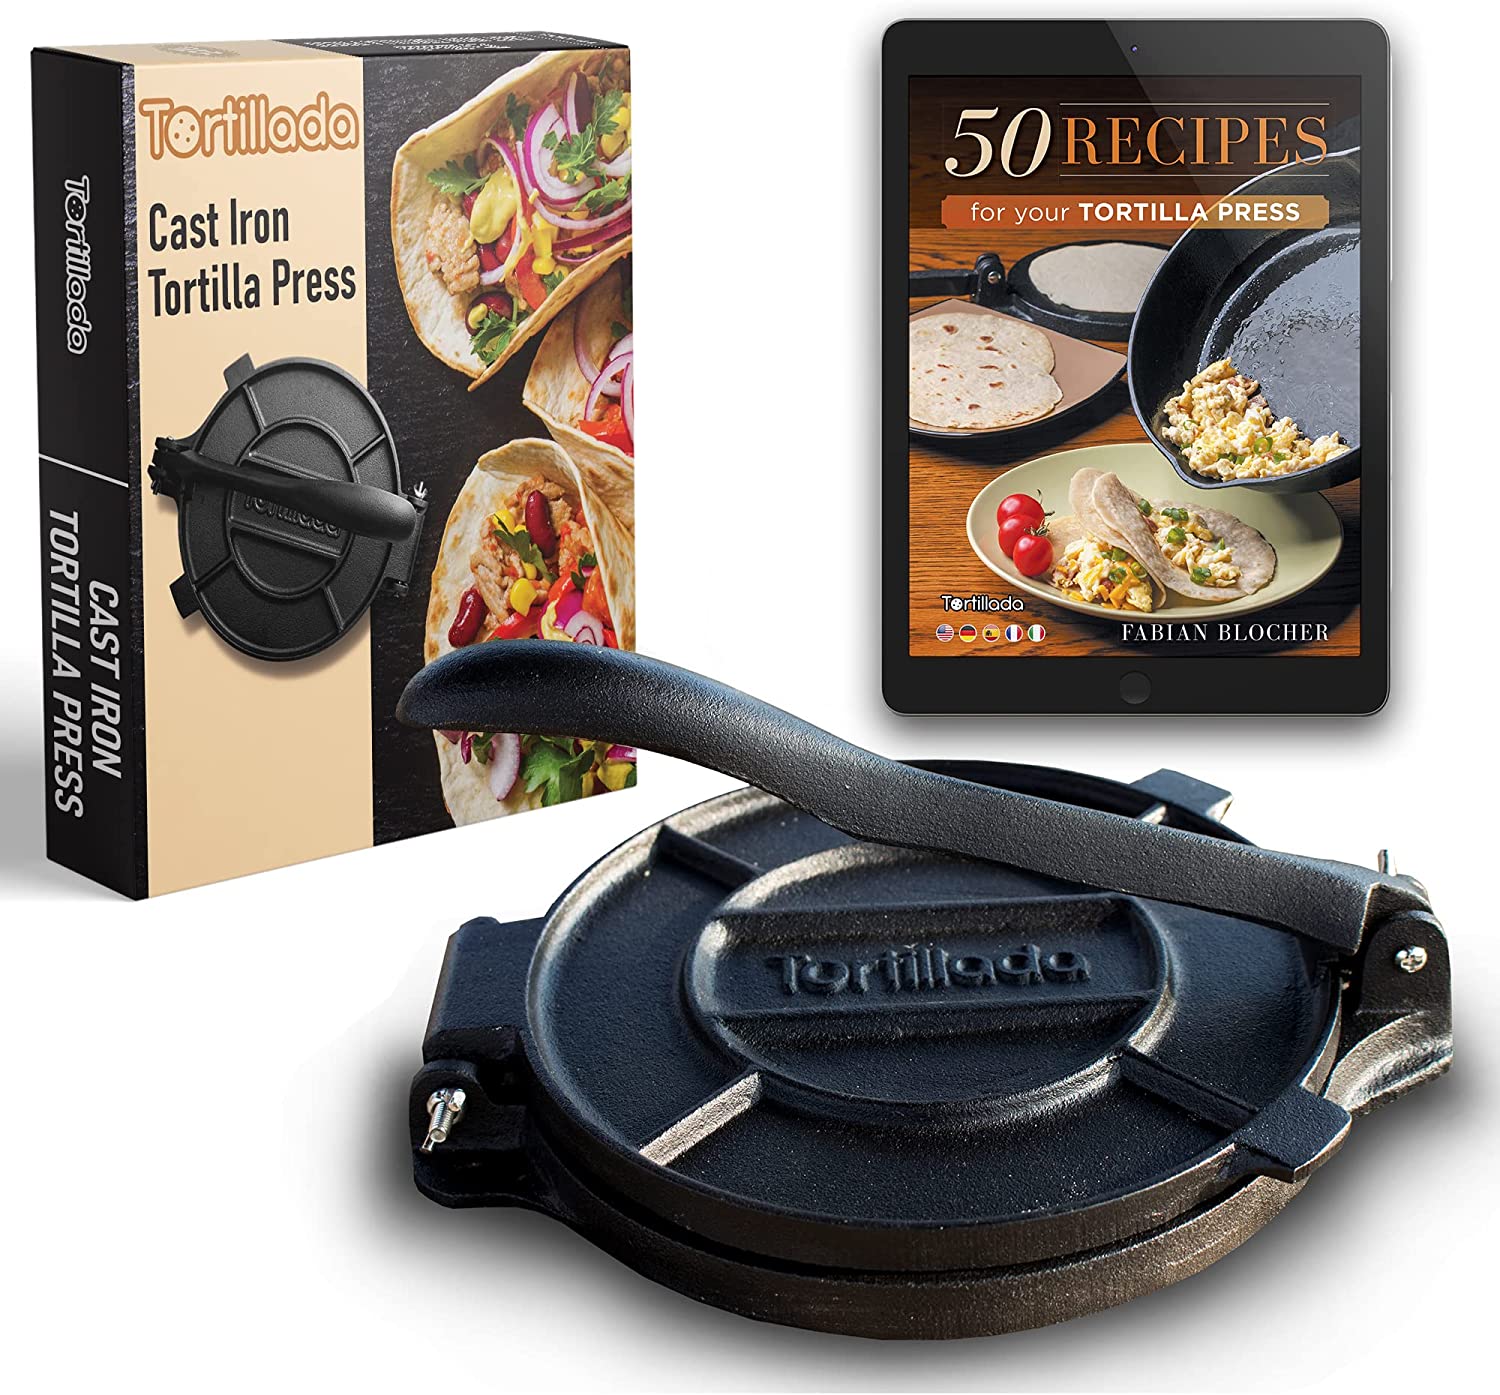 Tortillada Recipes E-Book & Cast Iron Tortilla Press